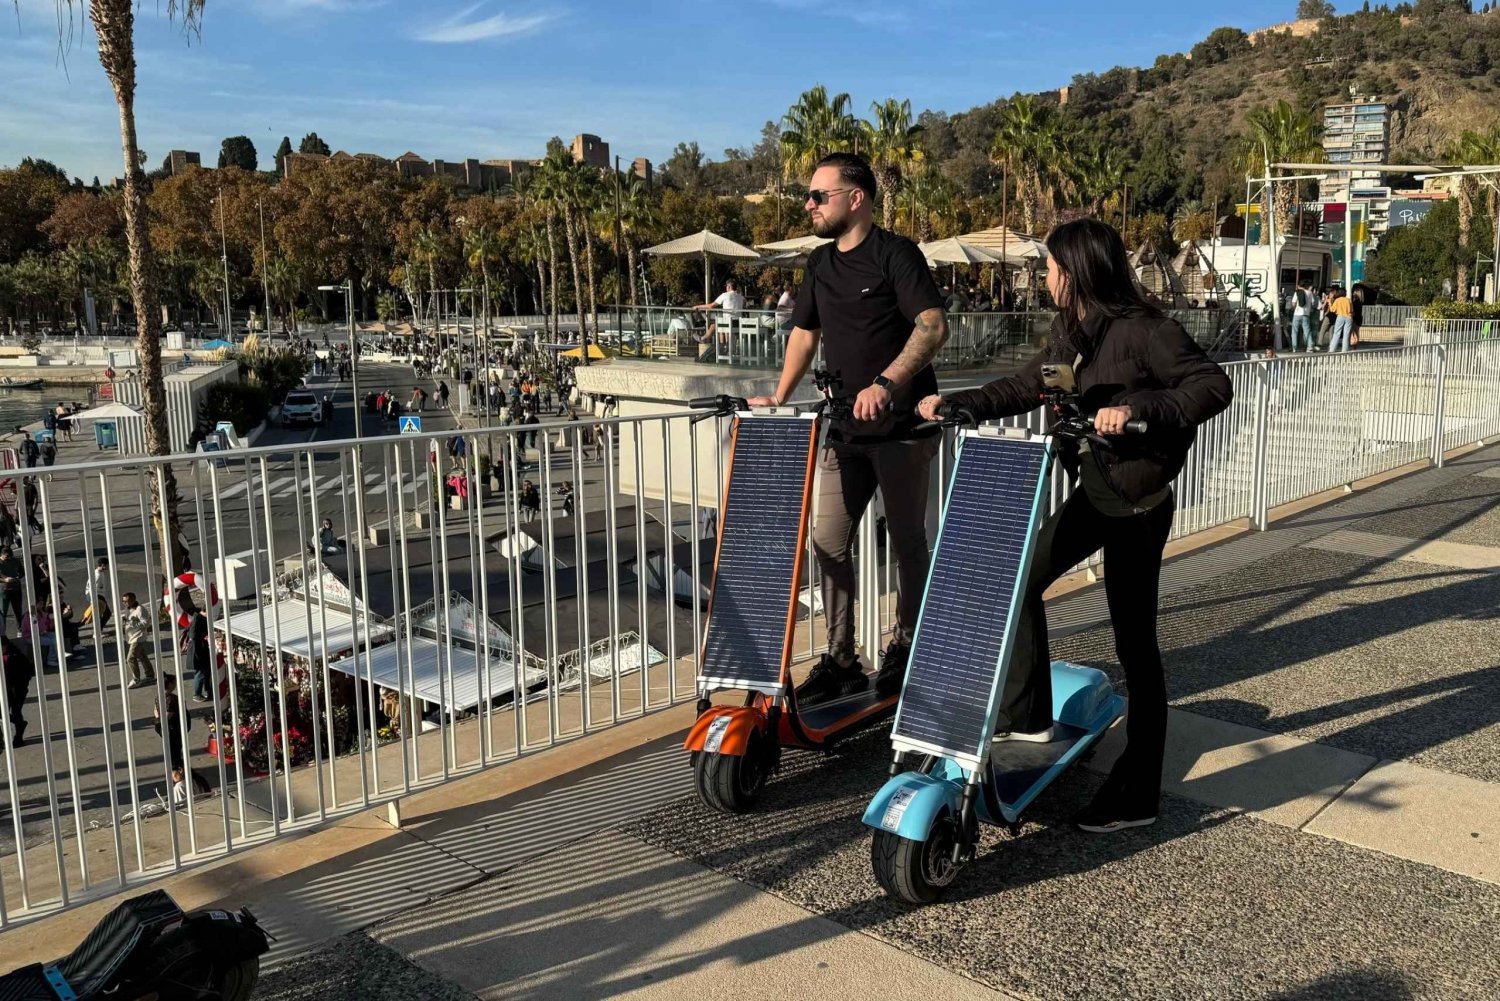 Malaga: zwiedzaj Malagę na skuterze solarnym